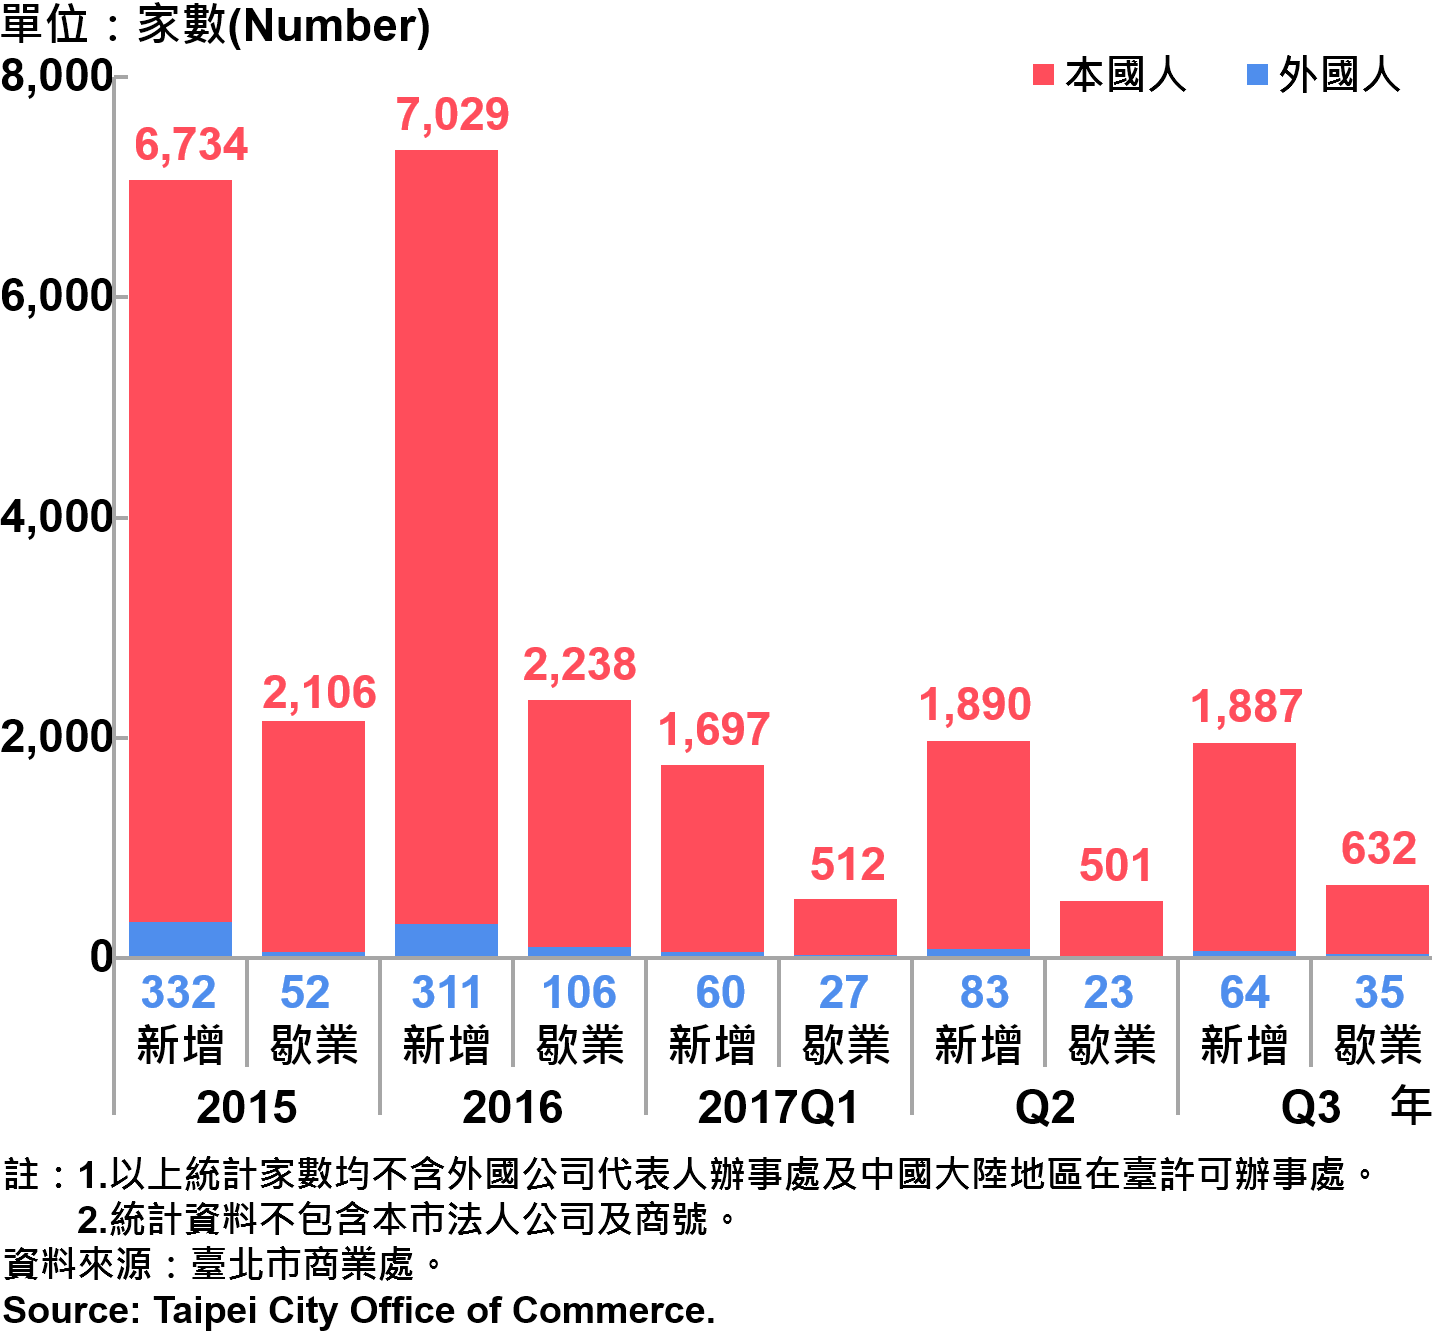 圖22、臺北市公司青創負責人為本國人與外國人分布情形—依新增及歇業家數—2017Q3 Responsible Person of Newly Registered Companies In Taipei City by Nationality - Number of Incorporation—2017Q3